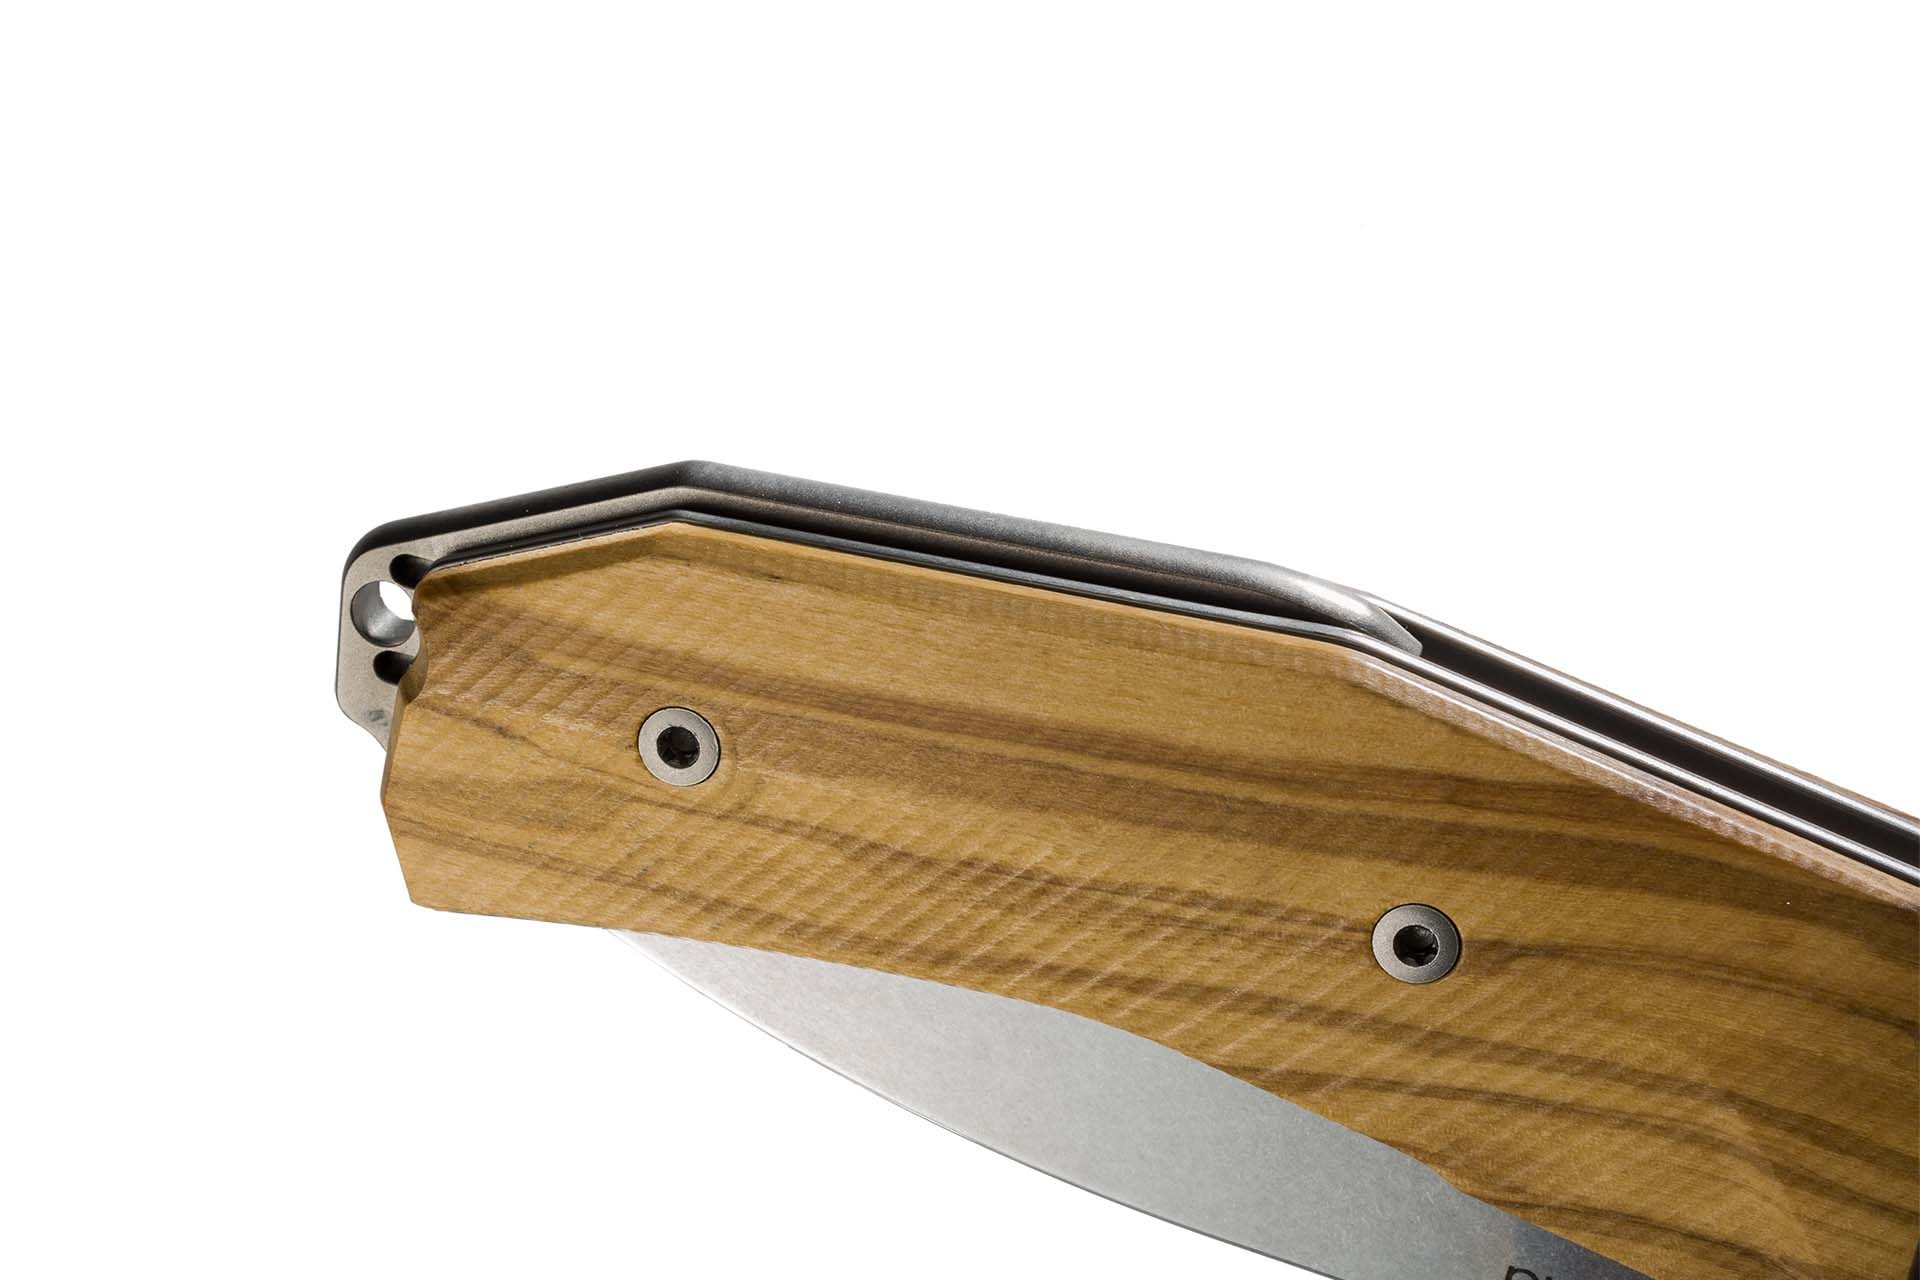 фото Нож складной lionsteel kur bul olive wood, сталь stonewashed & pvd-coated uddeholm sleipner®, рукоять оливковое дерево lion steel